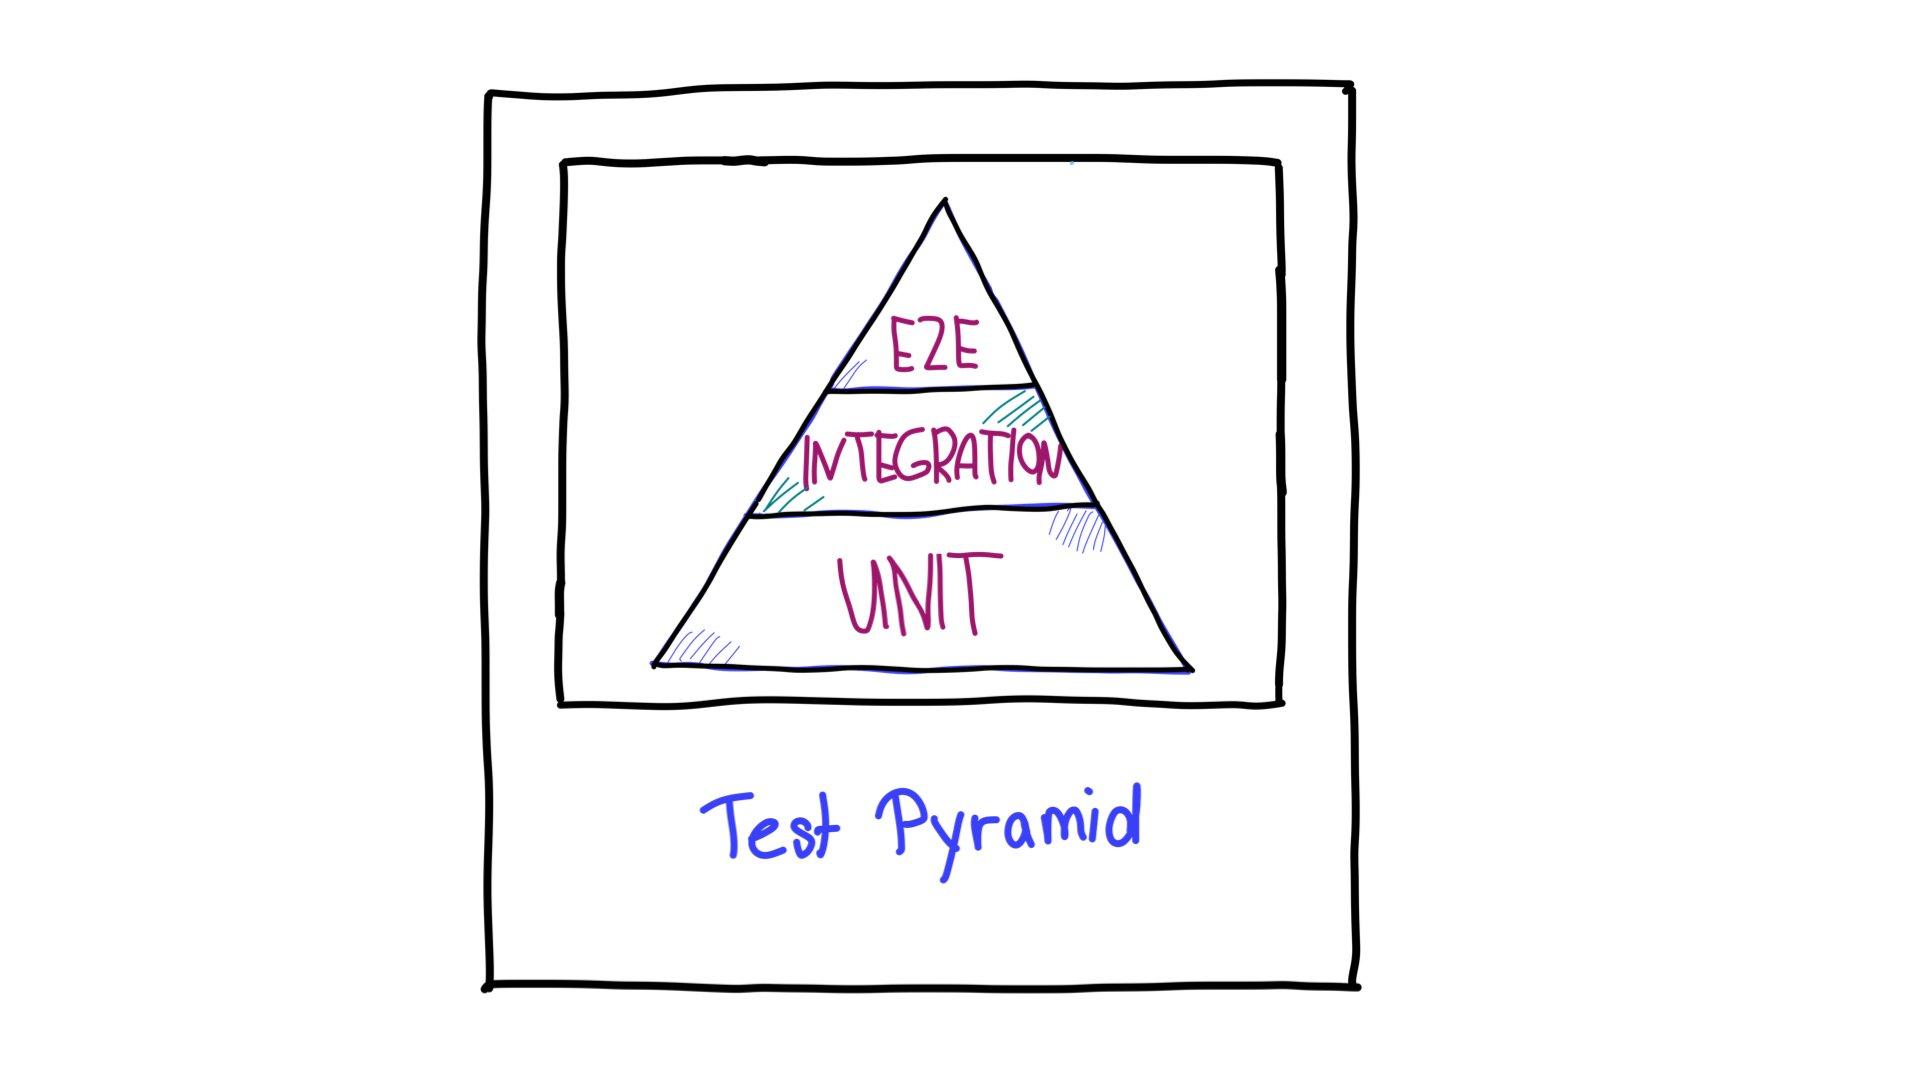 פירמידת הבדיקות,
 עם בדיקות מקצה לקצה (E2E) בחלק העליון, בדיקות שילוב באמצע ובדיקות יחידה בחלק התחתון.